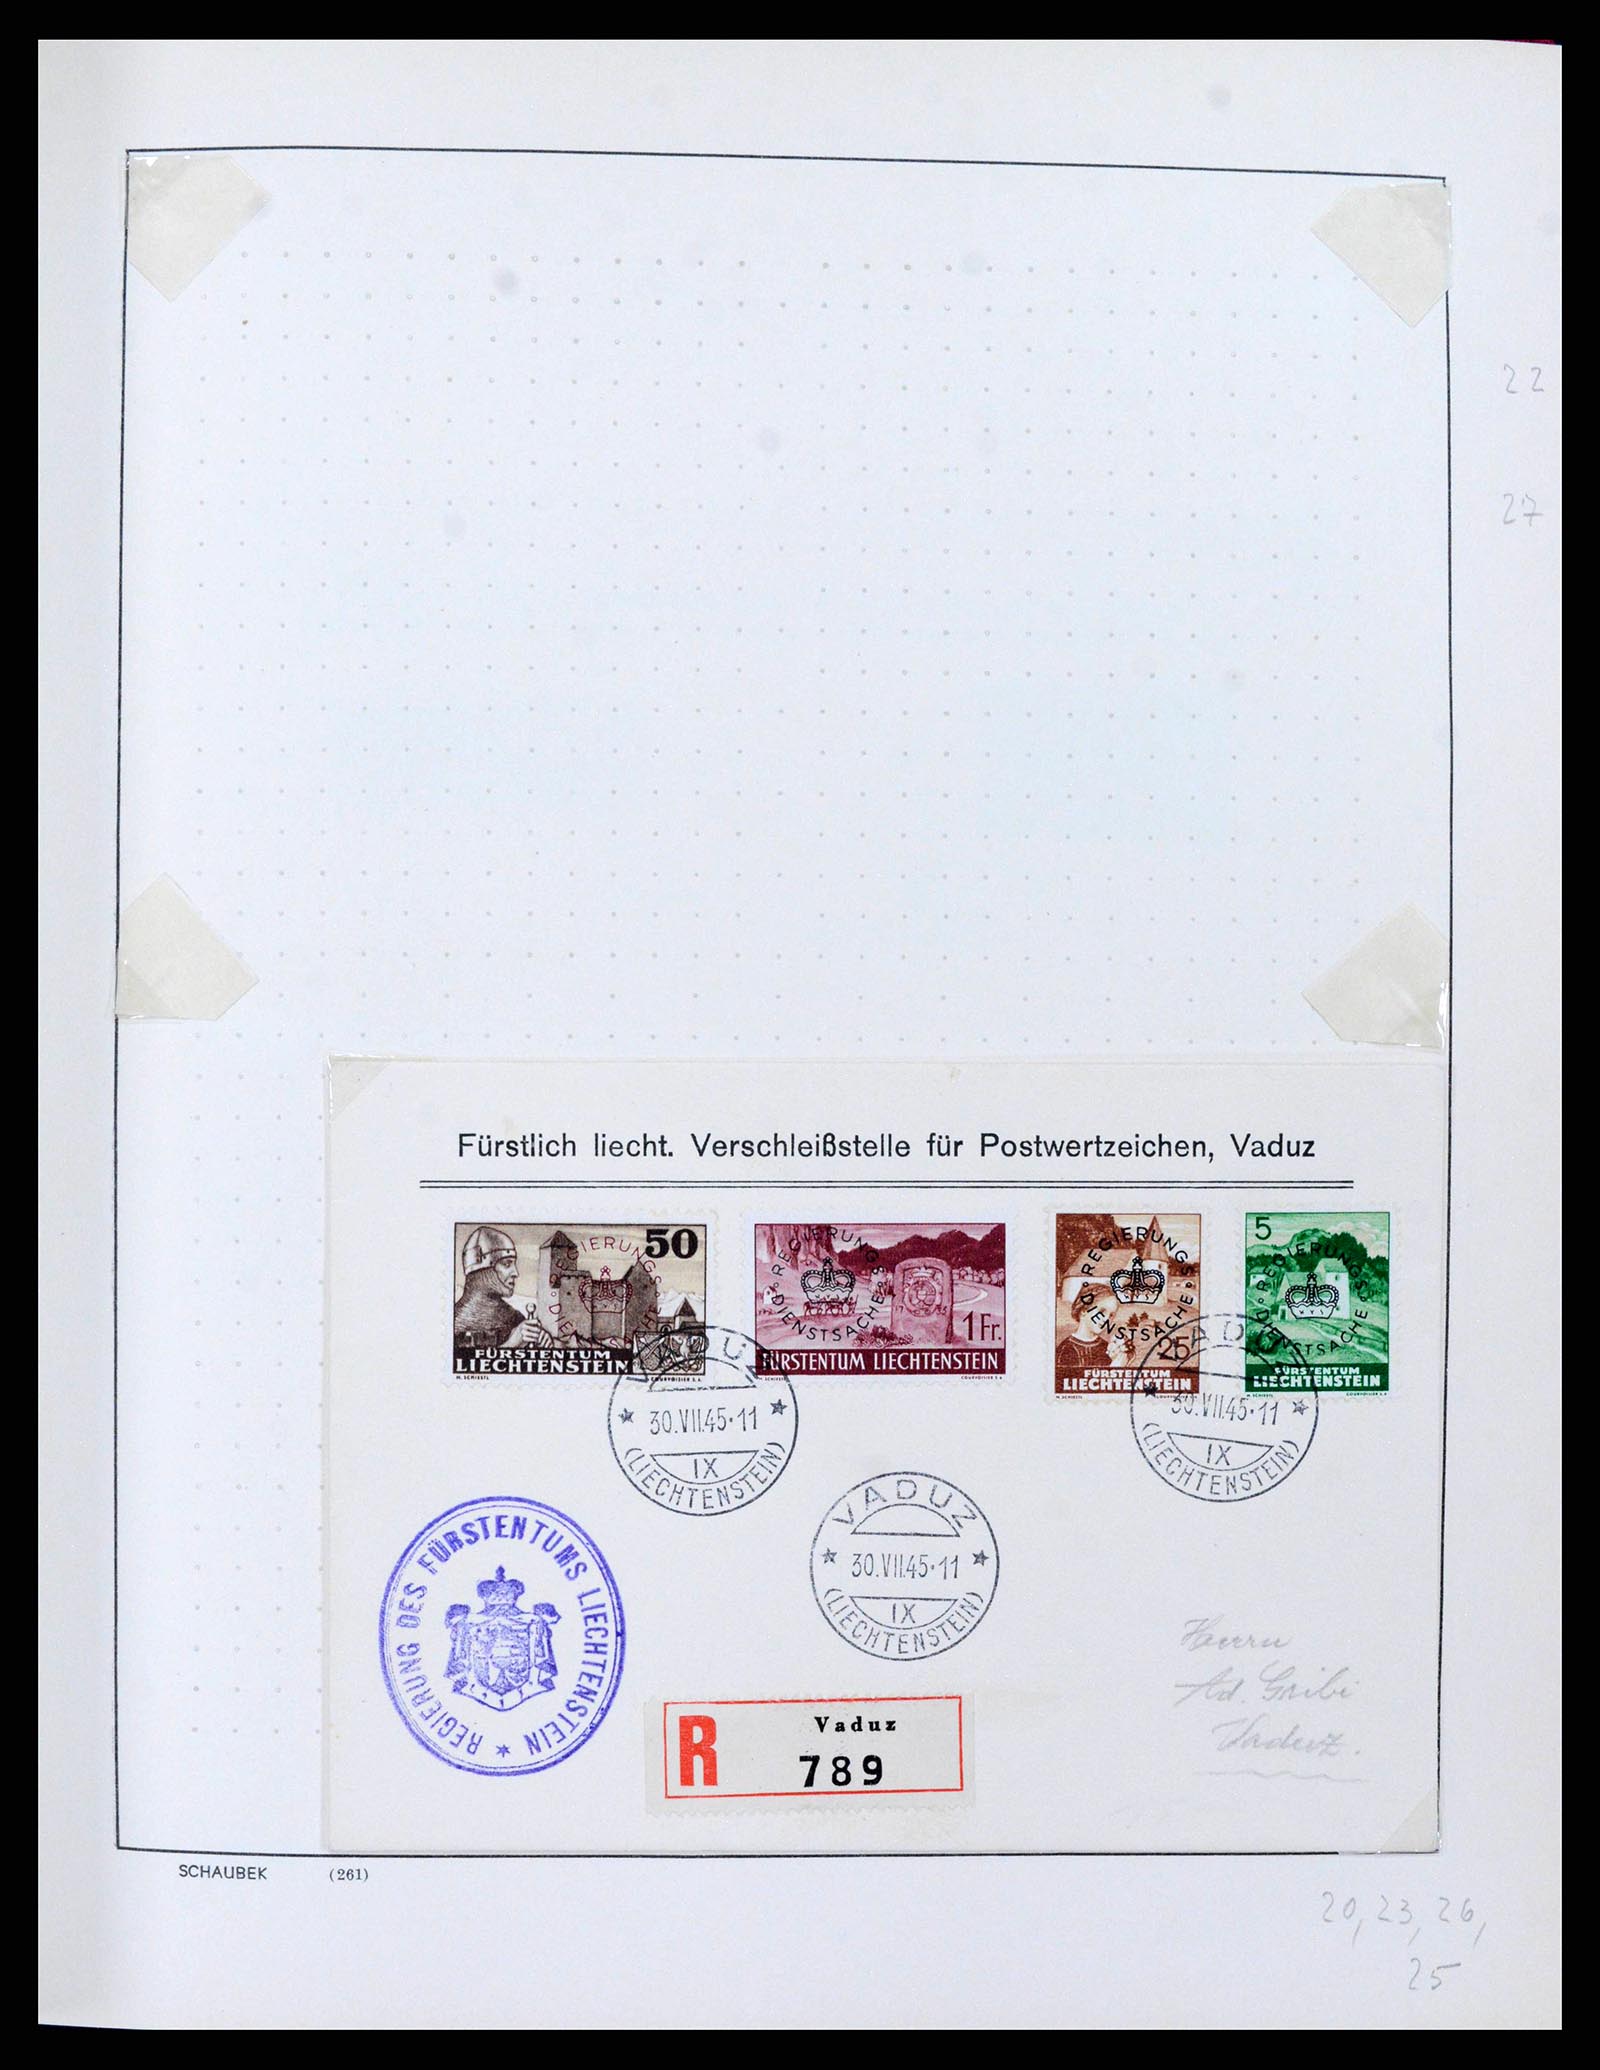 38204 0027 - Stamp collection 38204 Liechtenstein service covers 1932-1989.